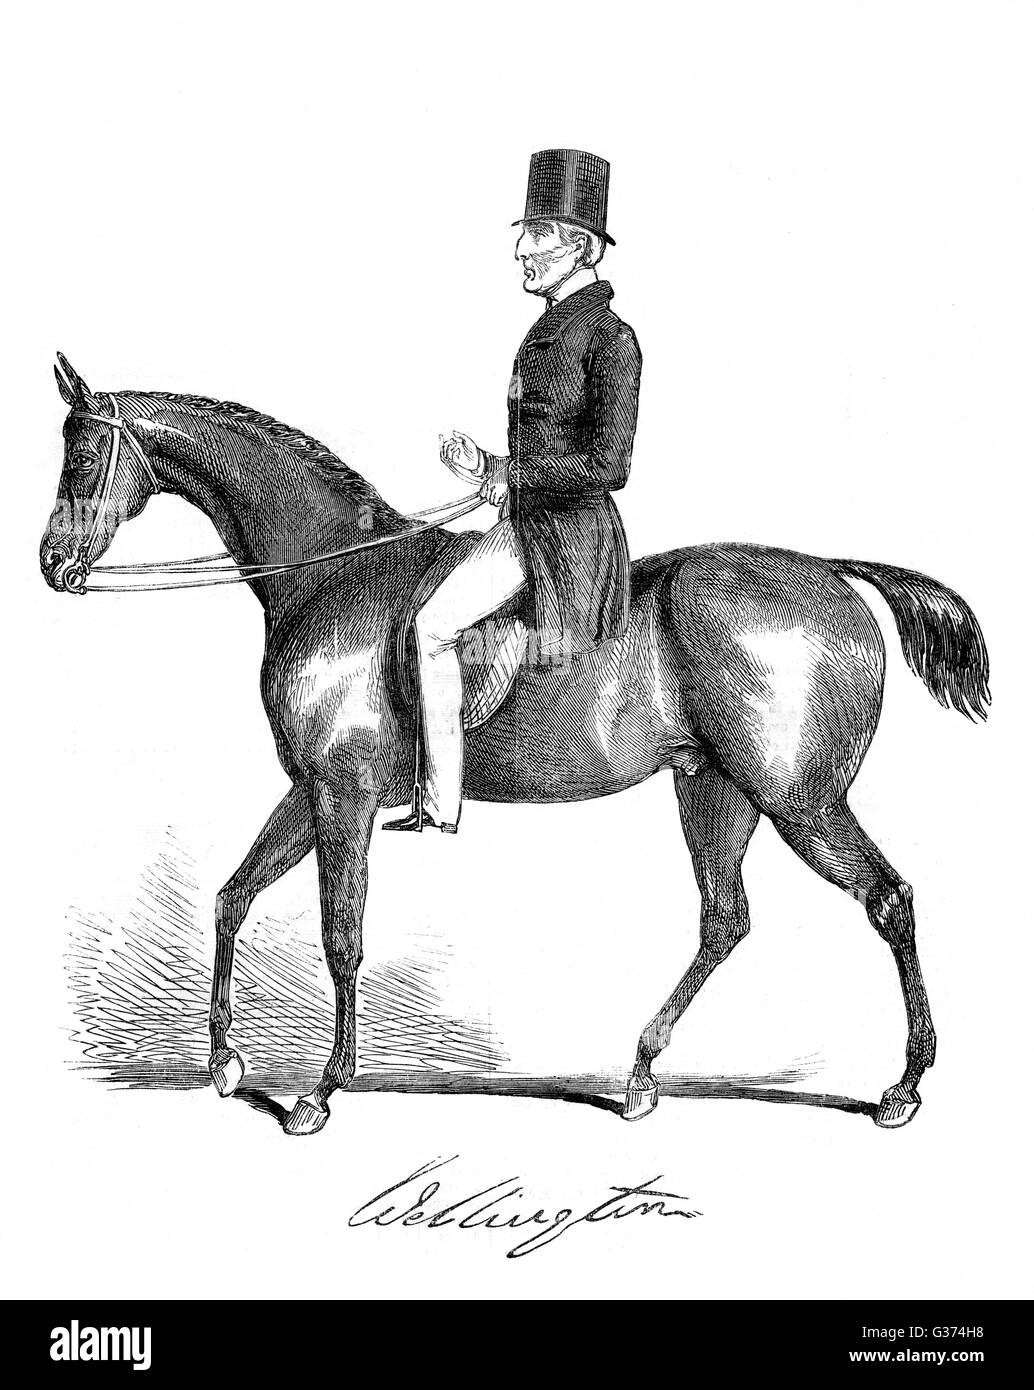 ARTHUR Wellesley, duc de Wellington, soldat et homme d'équitation, deux ans avant sa mort Date : 1769 - 1852 Banque D'Images